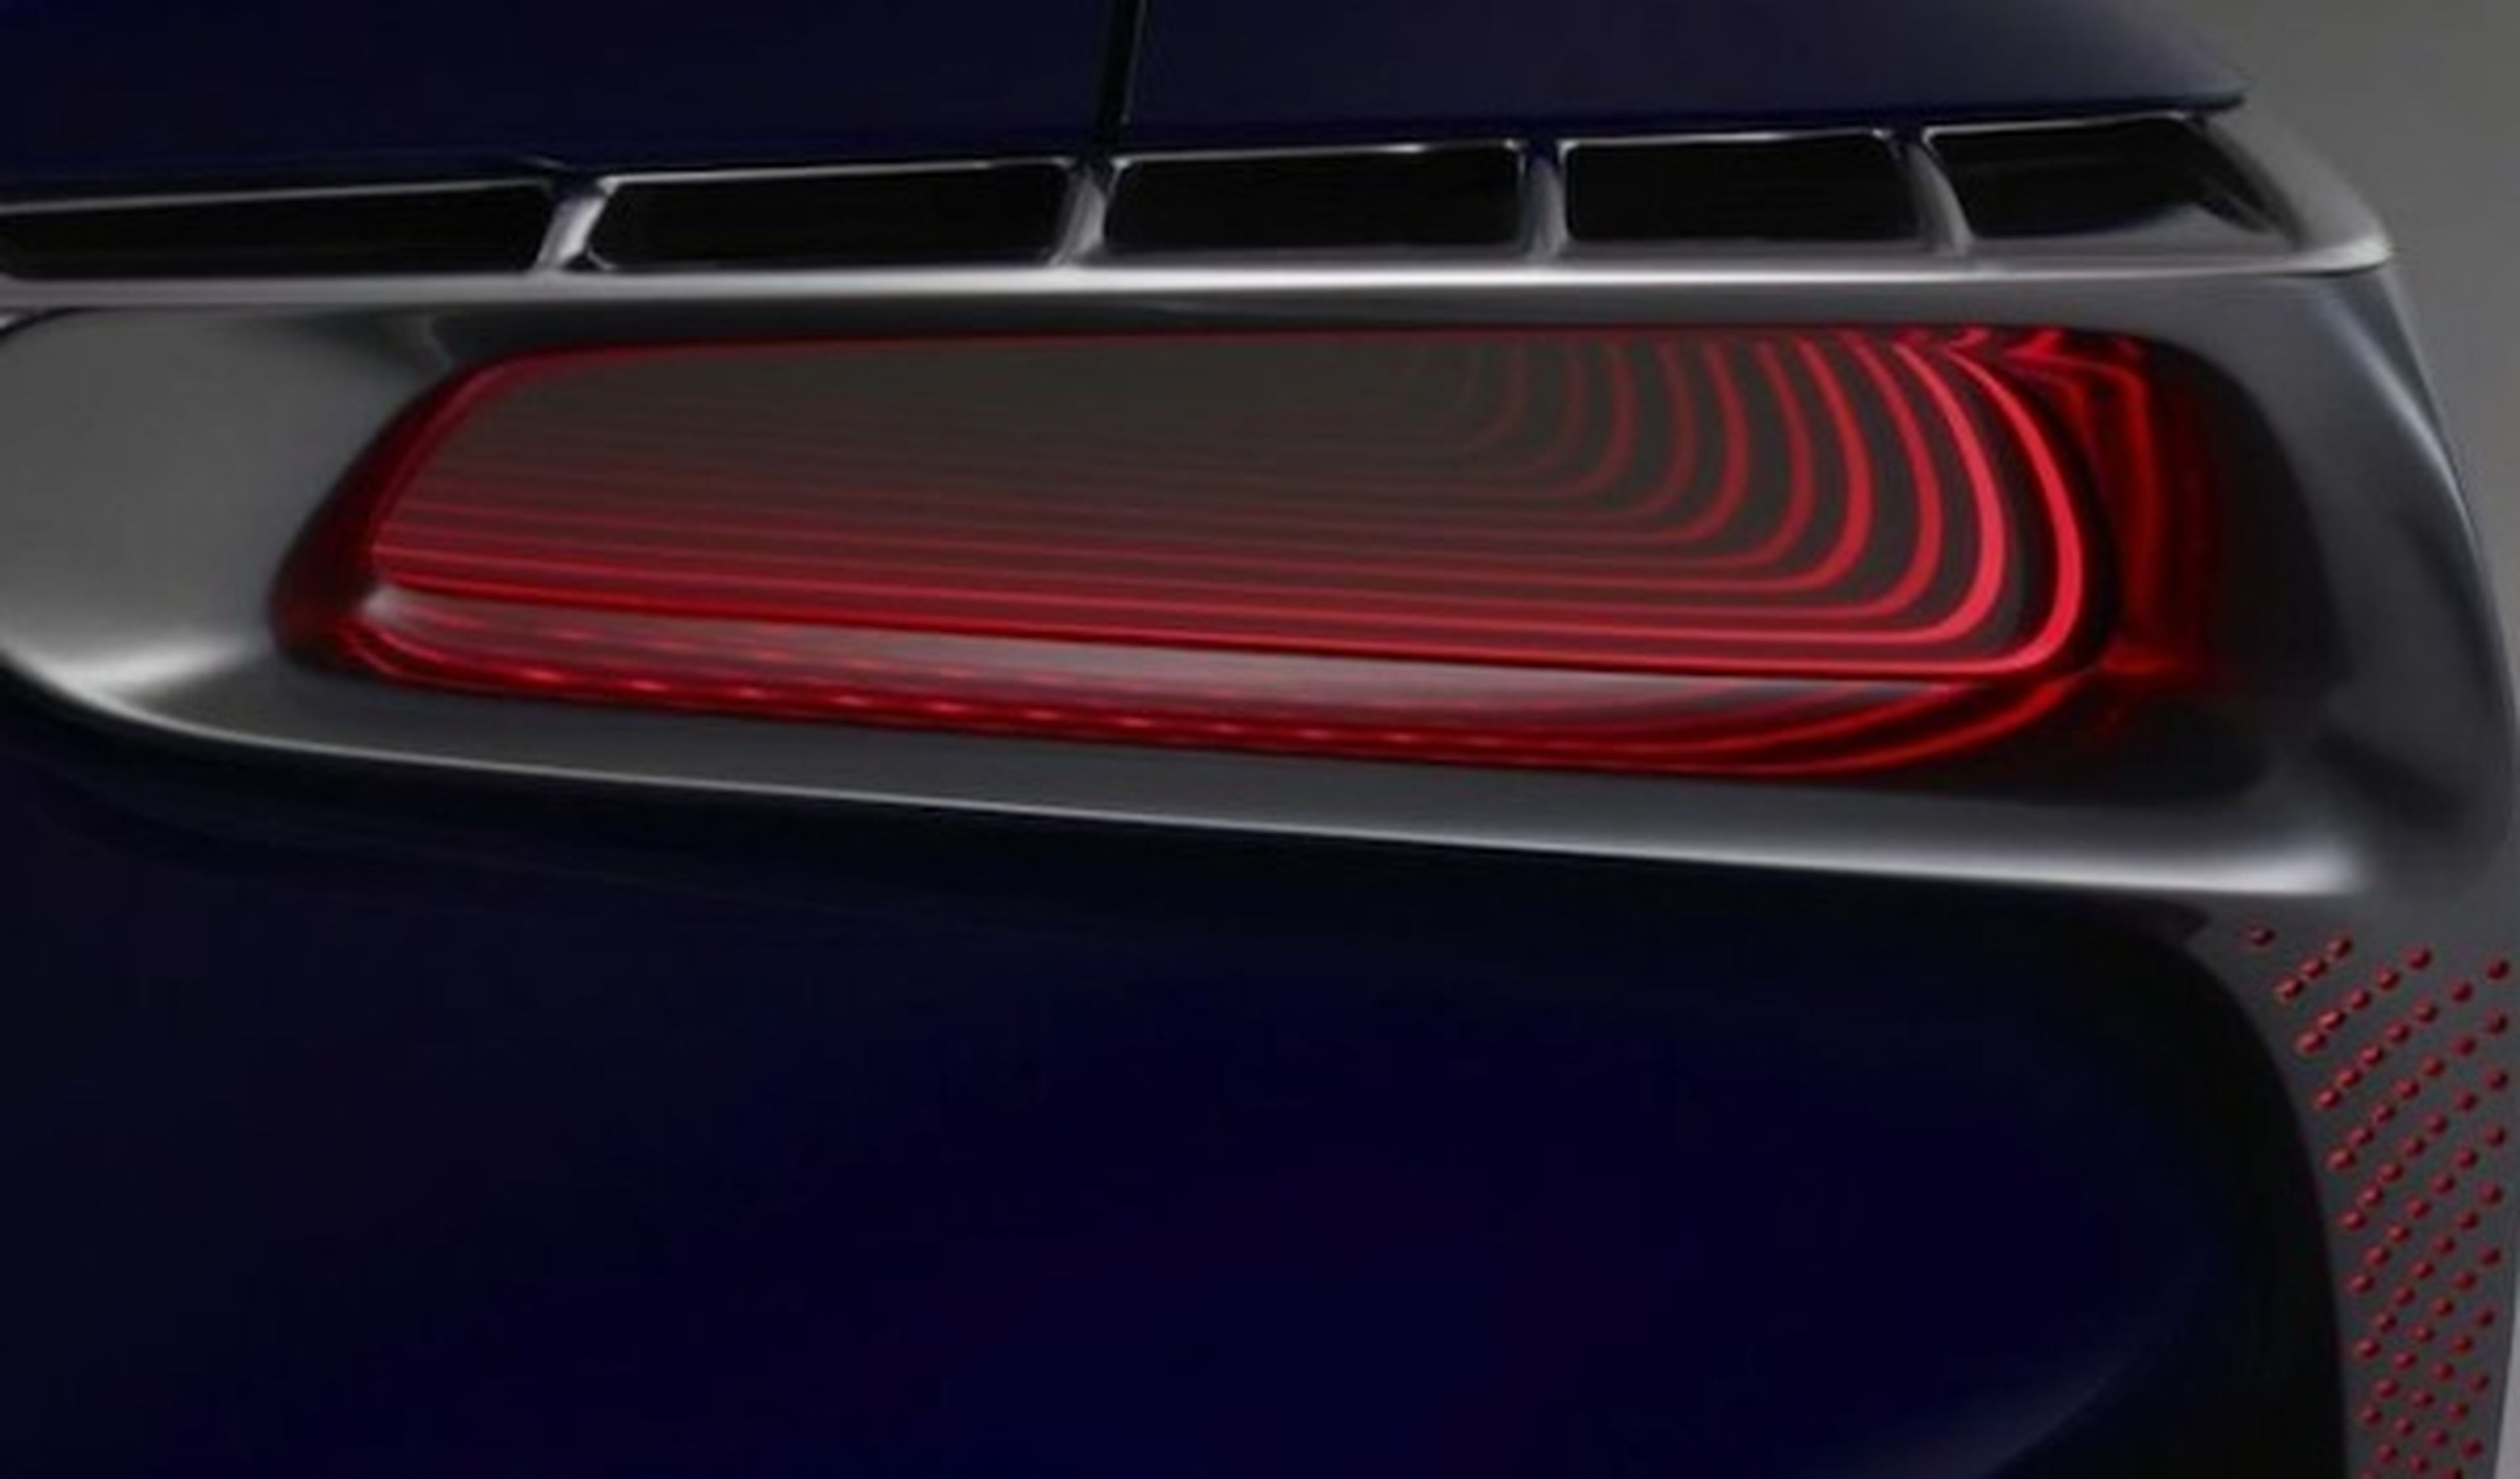 Lexus presentará un deportivo híbrido de 500 CV